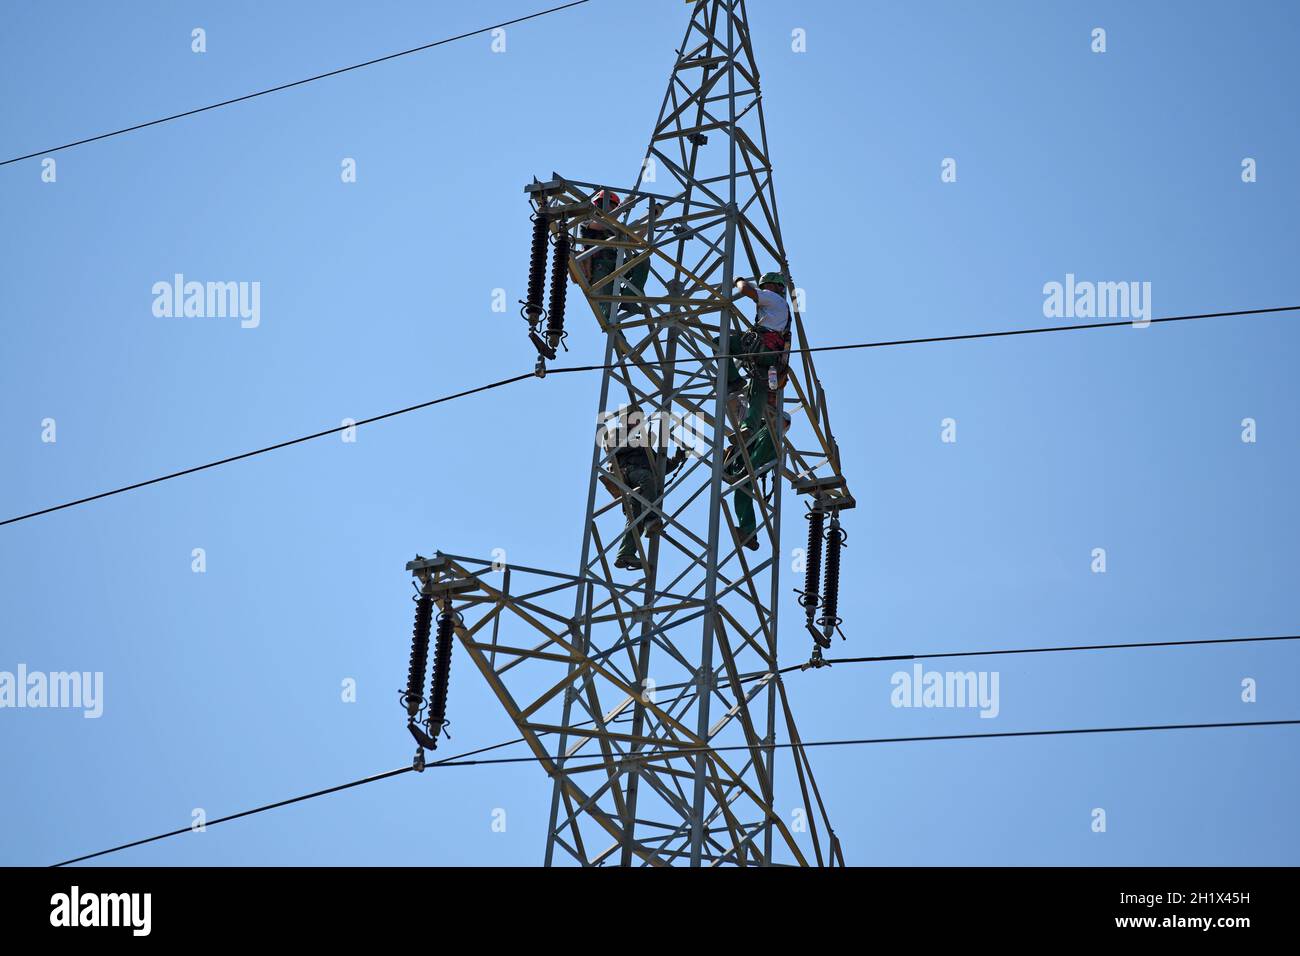 Arbeiter auf einem Hochspannungsmast, Oberösterreich, Österreich, Europa - Workers on a high voltage pylon, Upper Austria, Austria, Europe Stock Photo